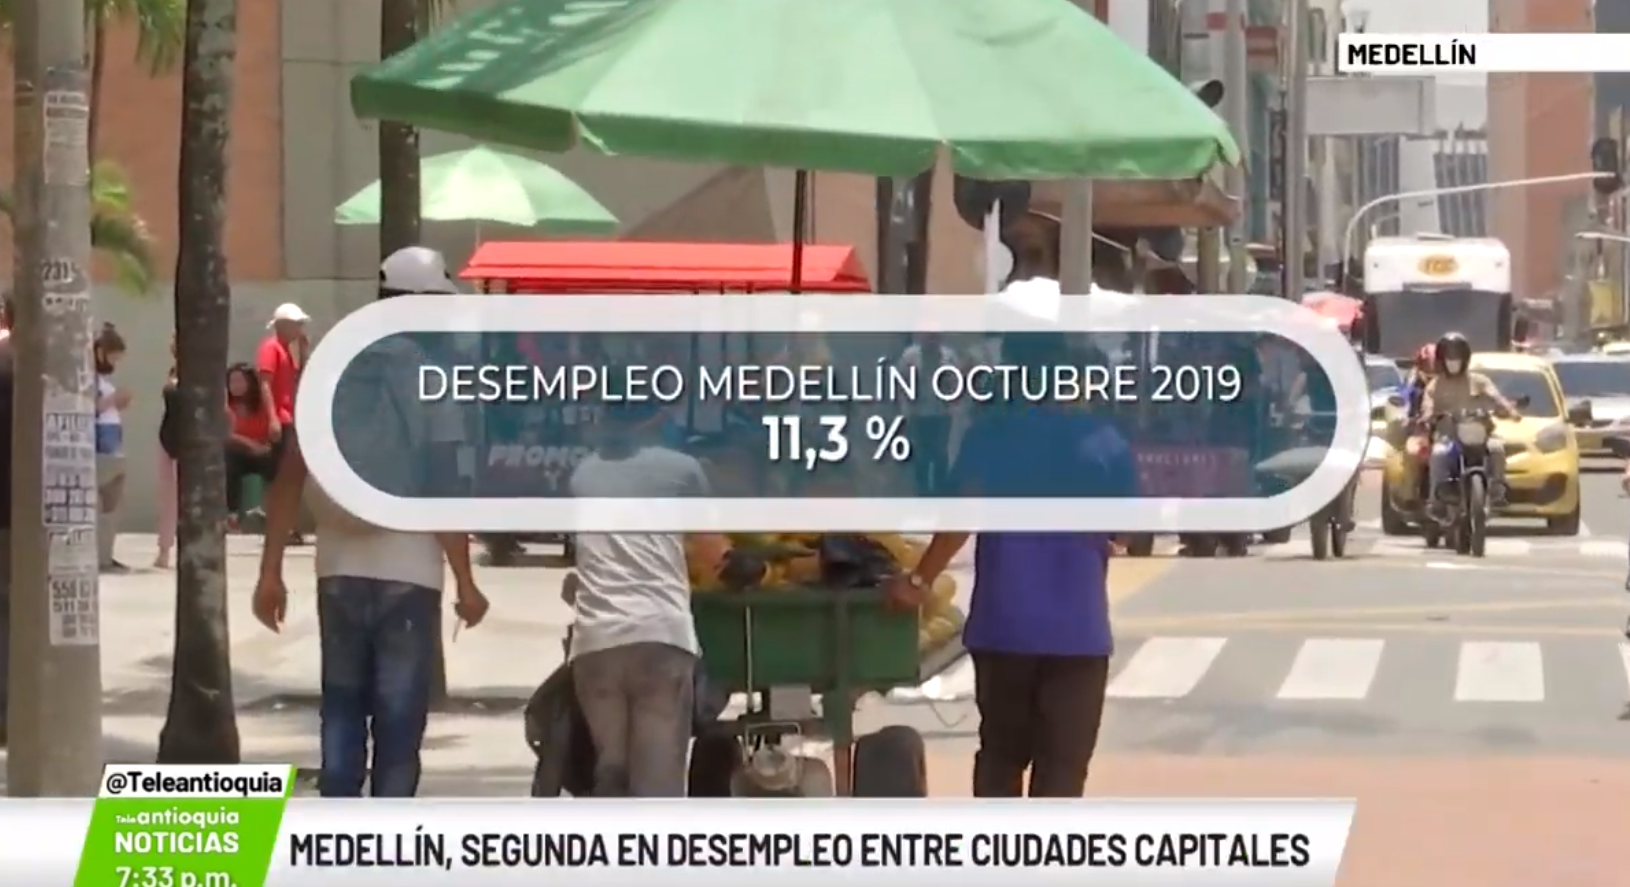 Medellín, segunda en desempleo entre ciudades capitales